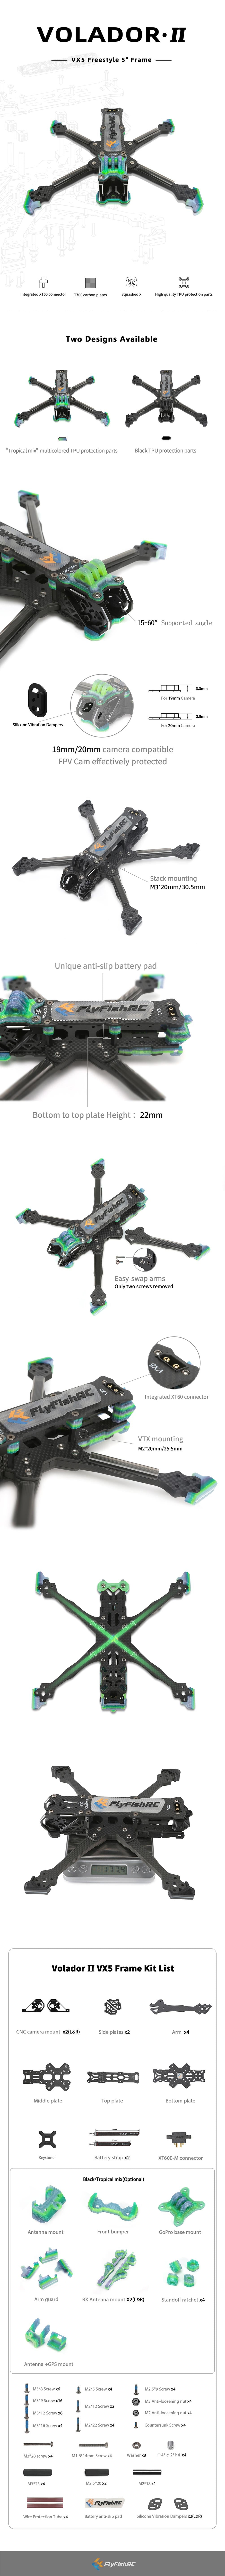 Volador VX5 O3 Frame Detail. Robotonbd